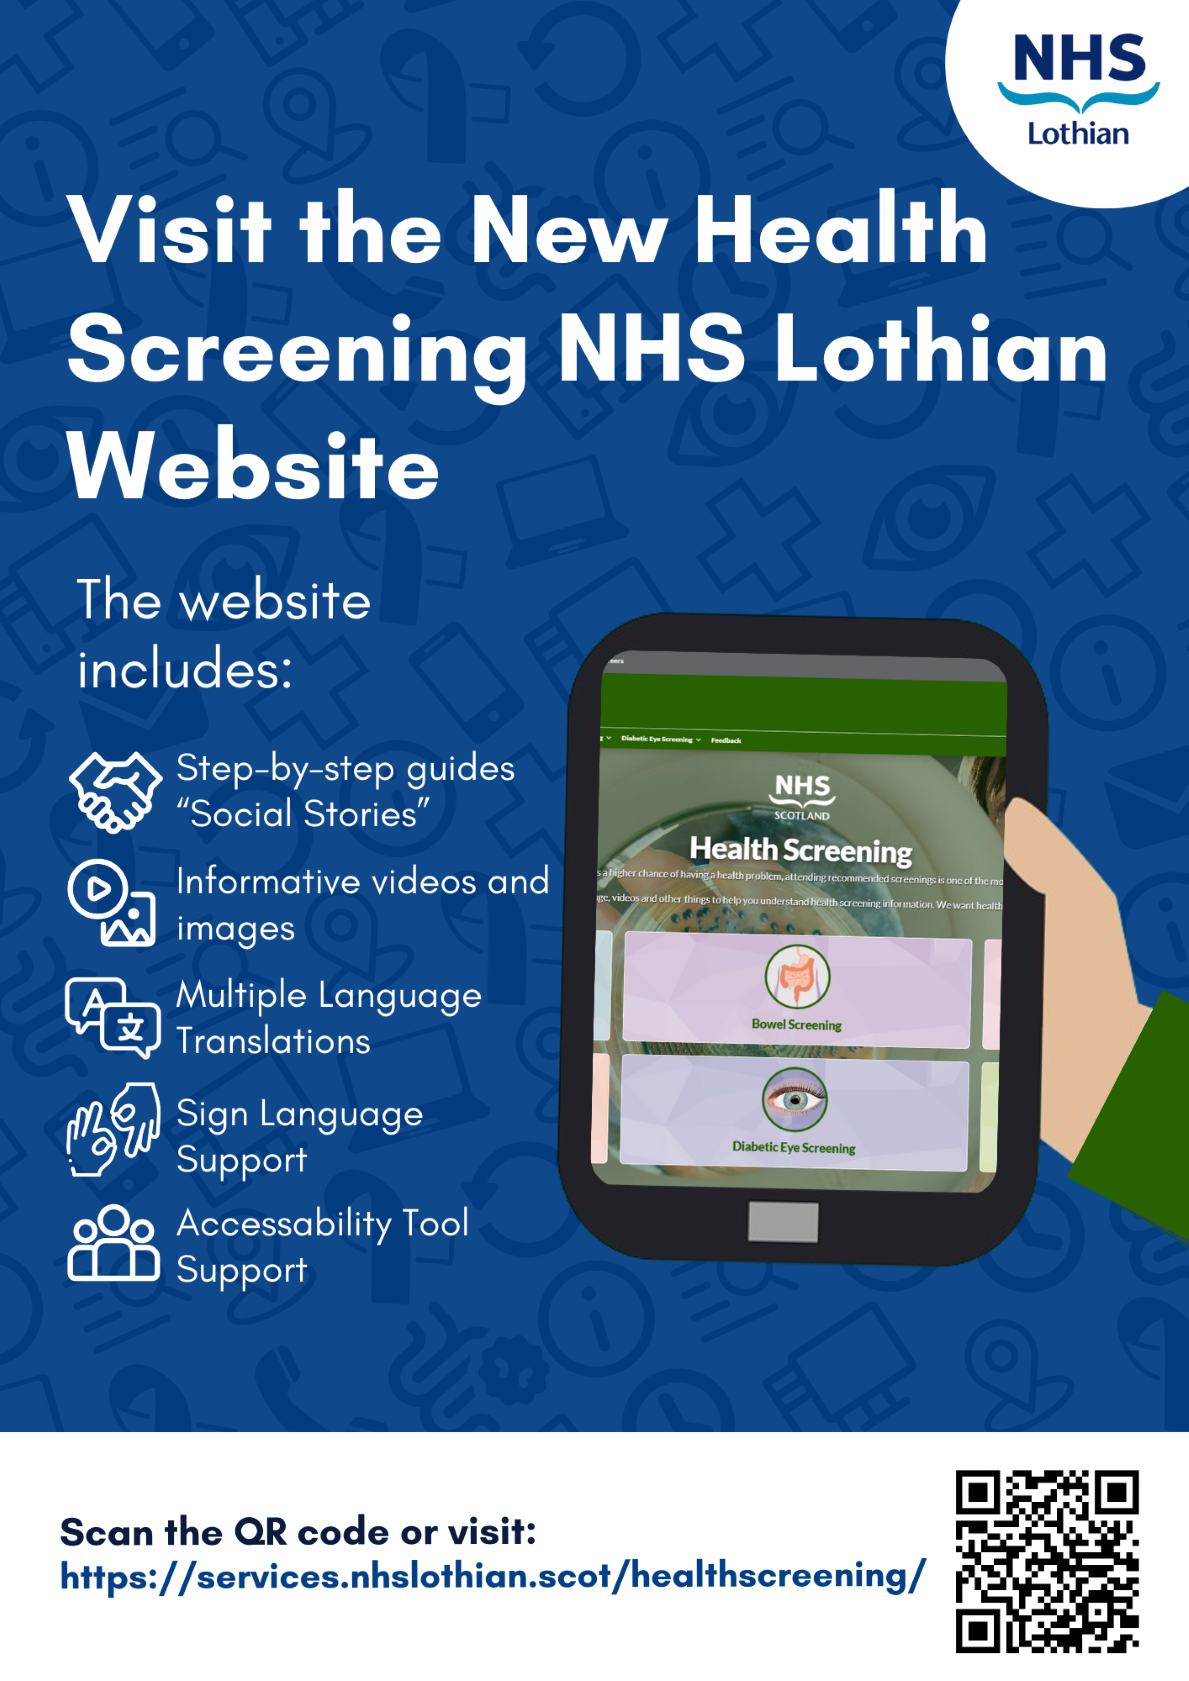 NHS Health Screening